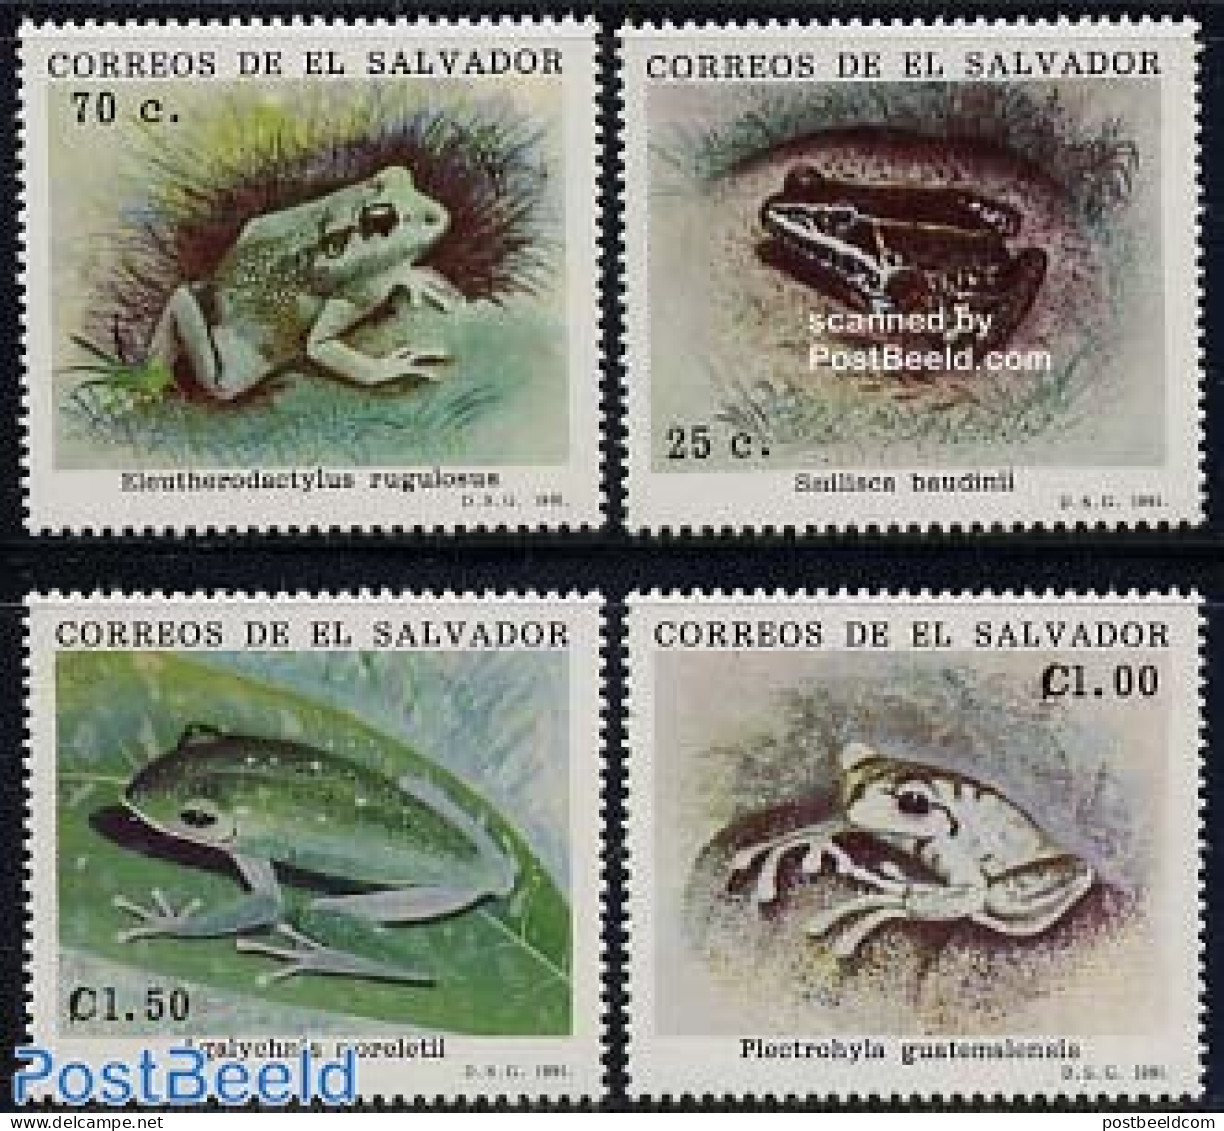 El Salvador 1991 Frogs 4v, Mint NH, Nature - Frogs & Toads - Reptiles - Salvador